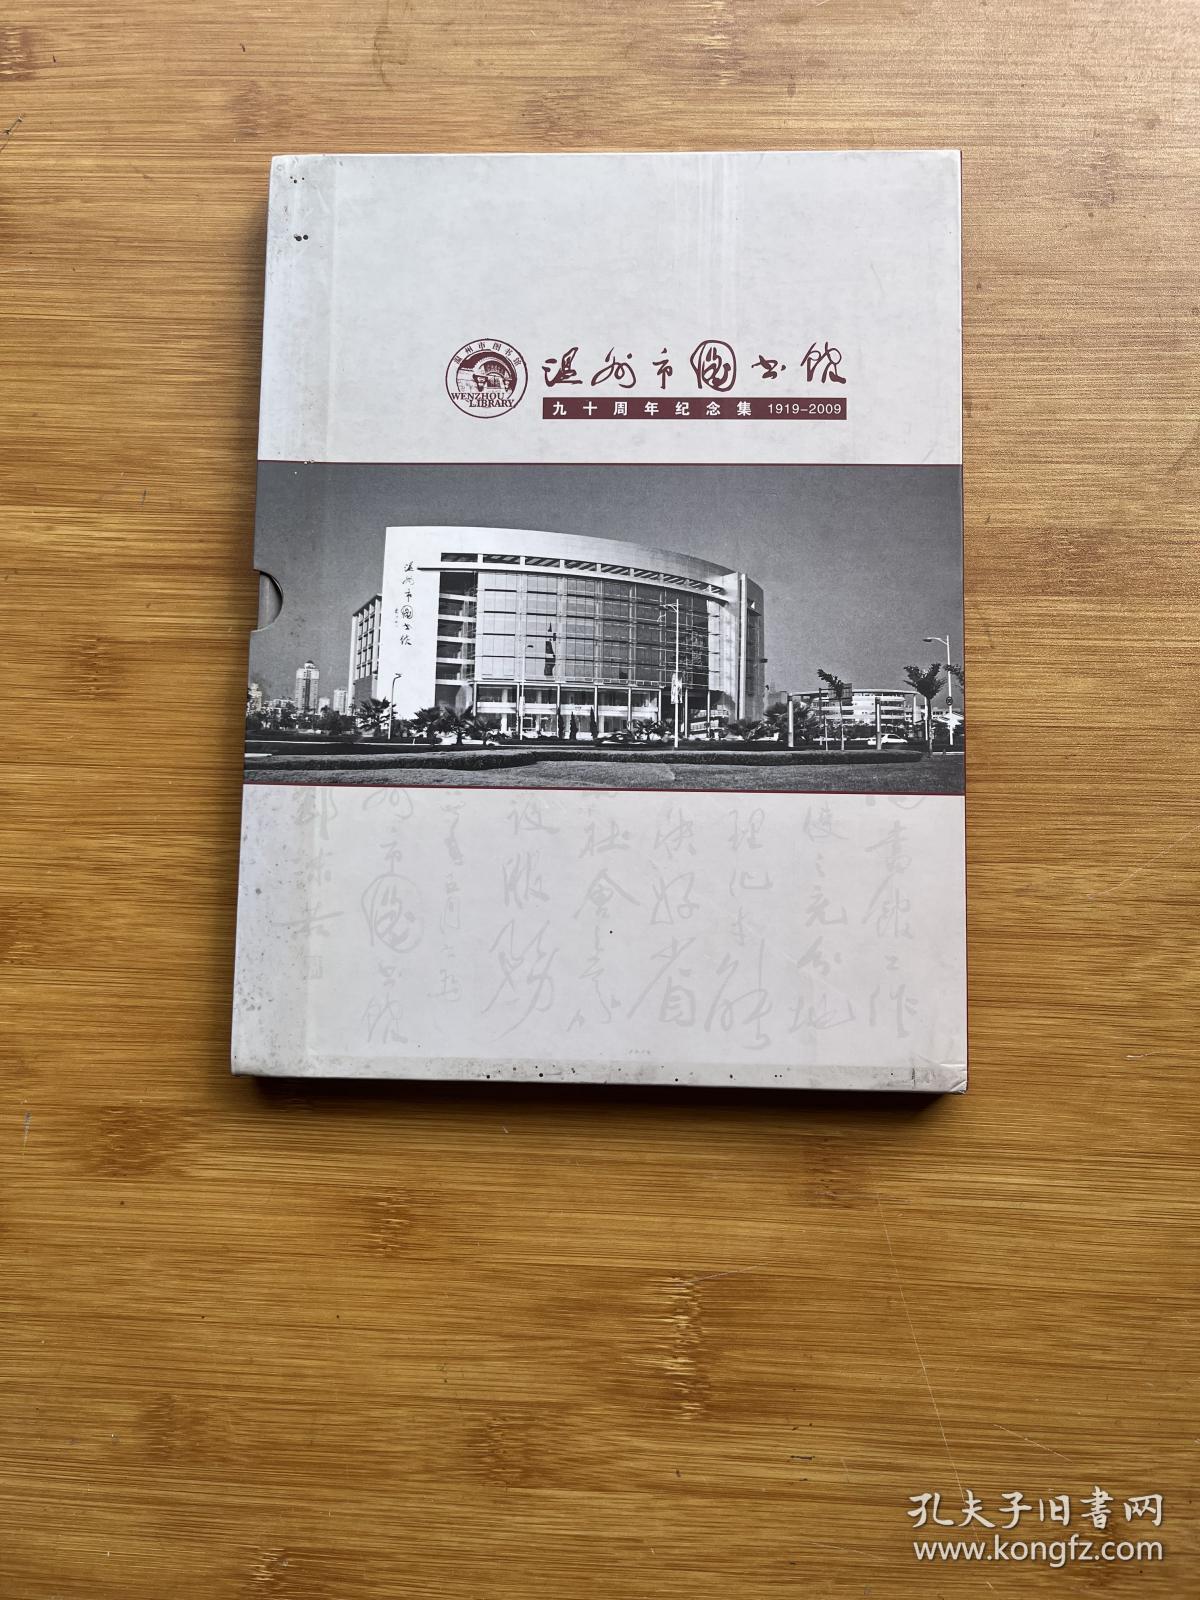 温州市图书馆九十周年纪念集